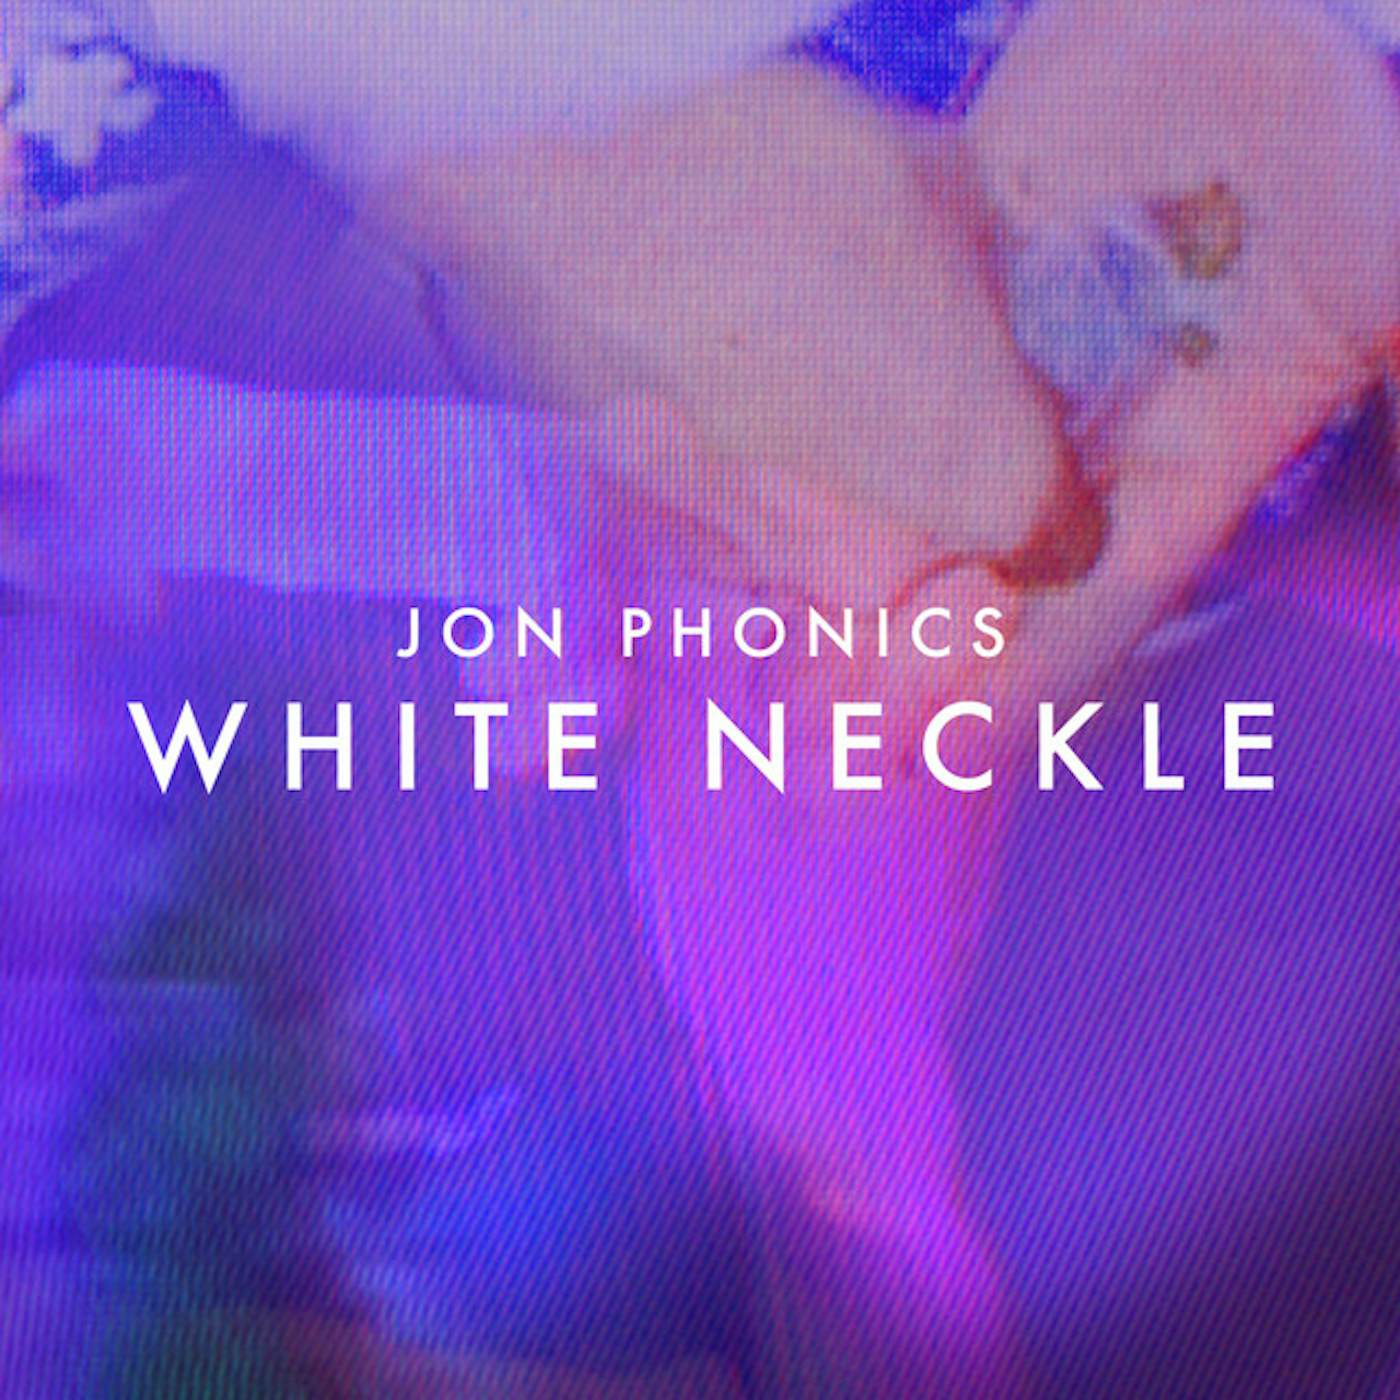 Jon Phonics White Neckle Vinyl Record